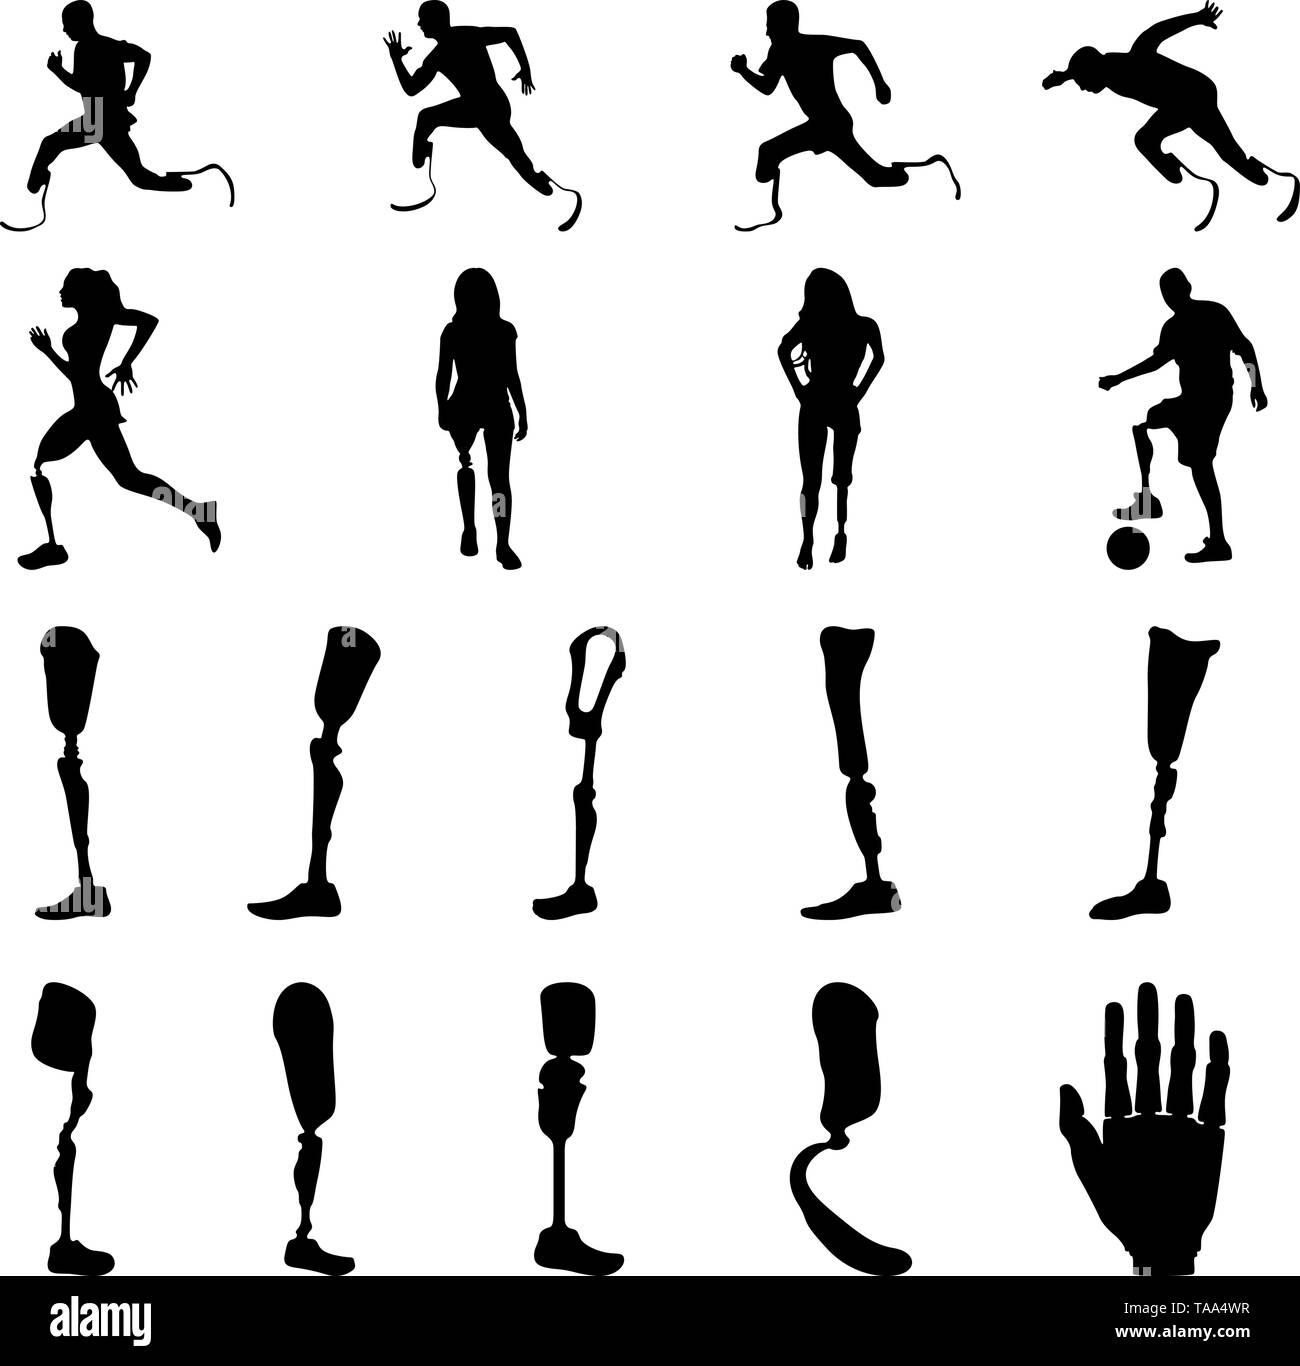 Silhouetten von amputee Menschen mit künstlichen Gliedmaßen. Silhouetten der prothetischen Beine und Arme. Stock Vektor